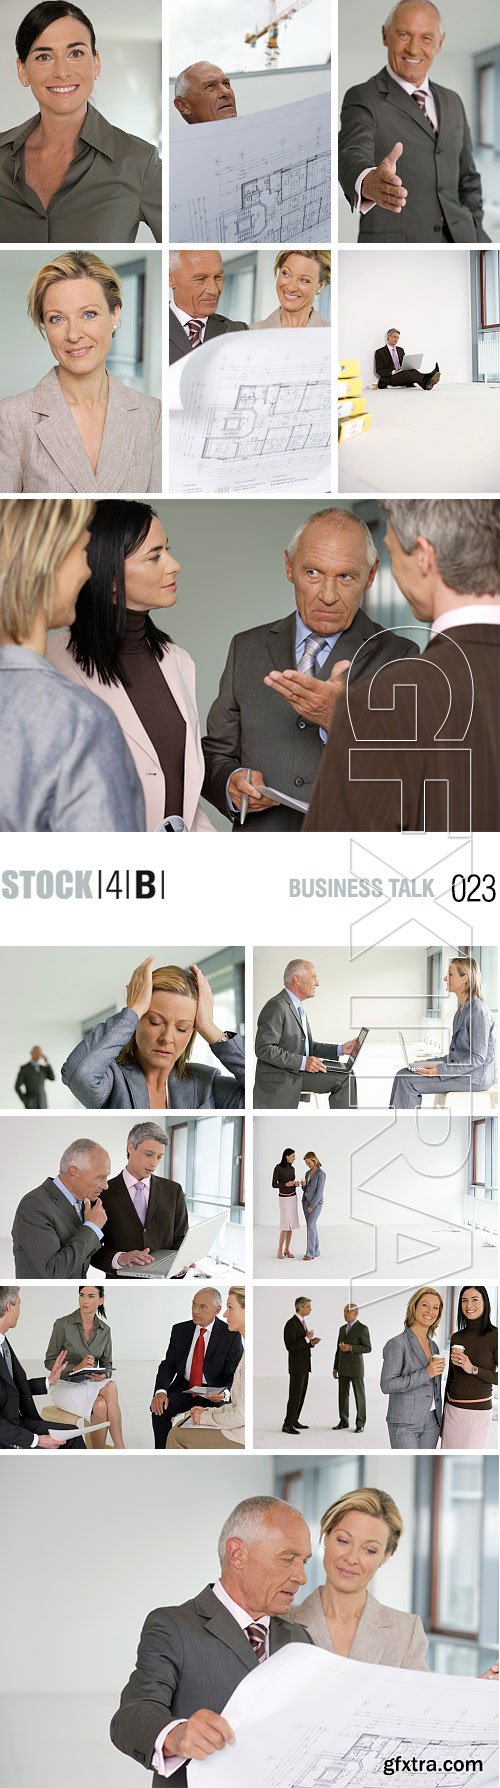 Stock4B RF023 Business Talk